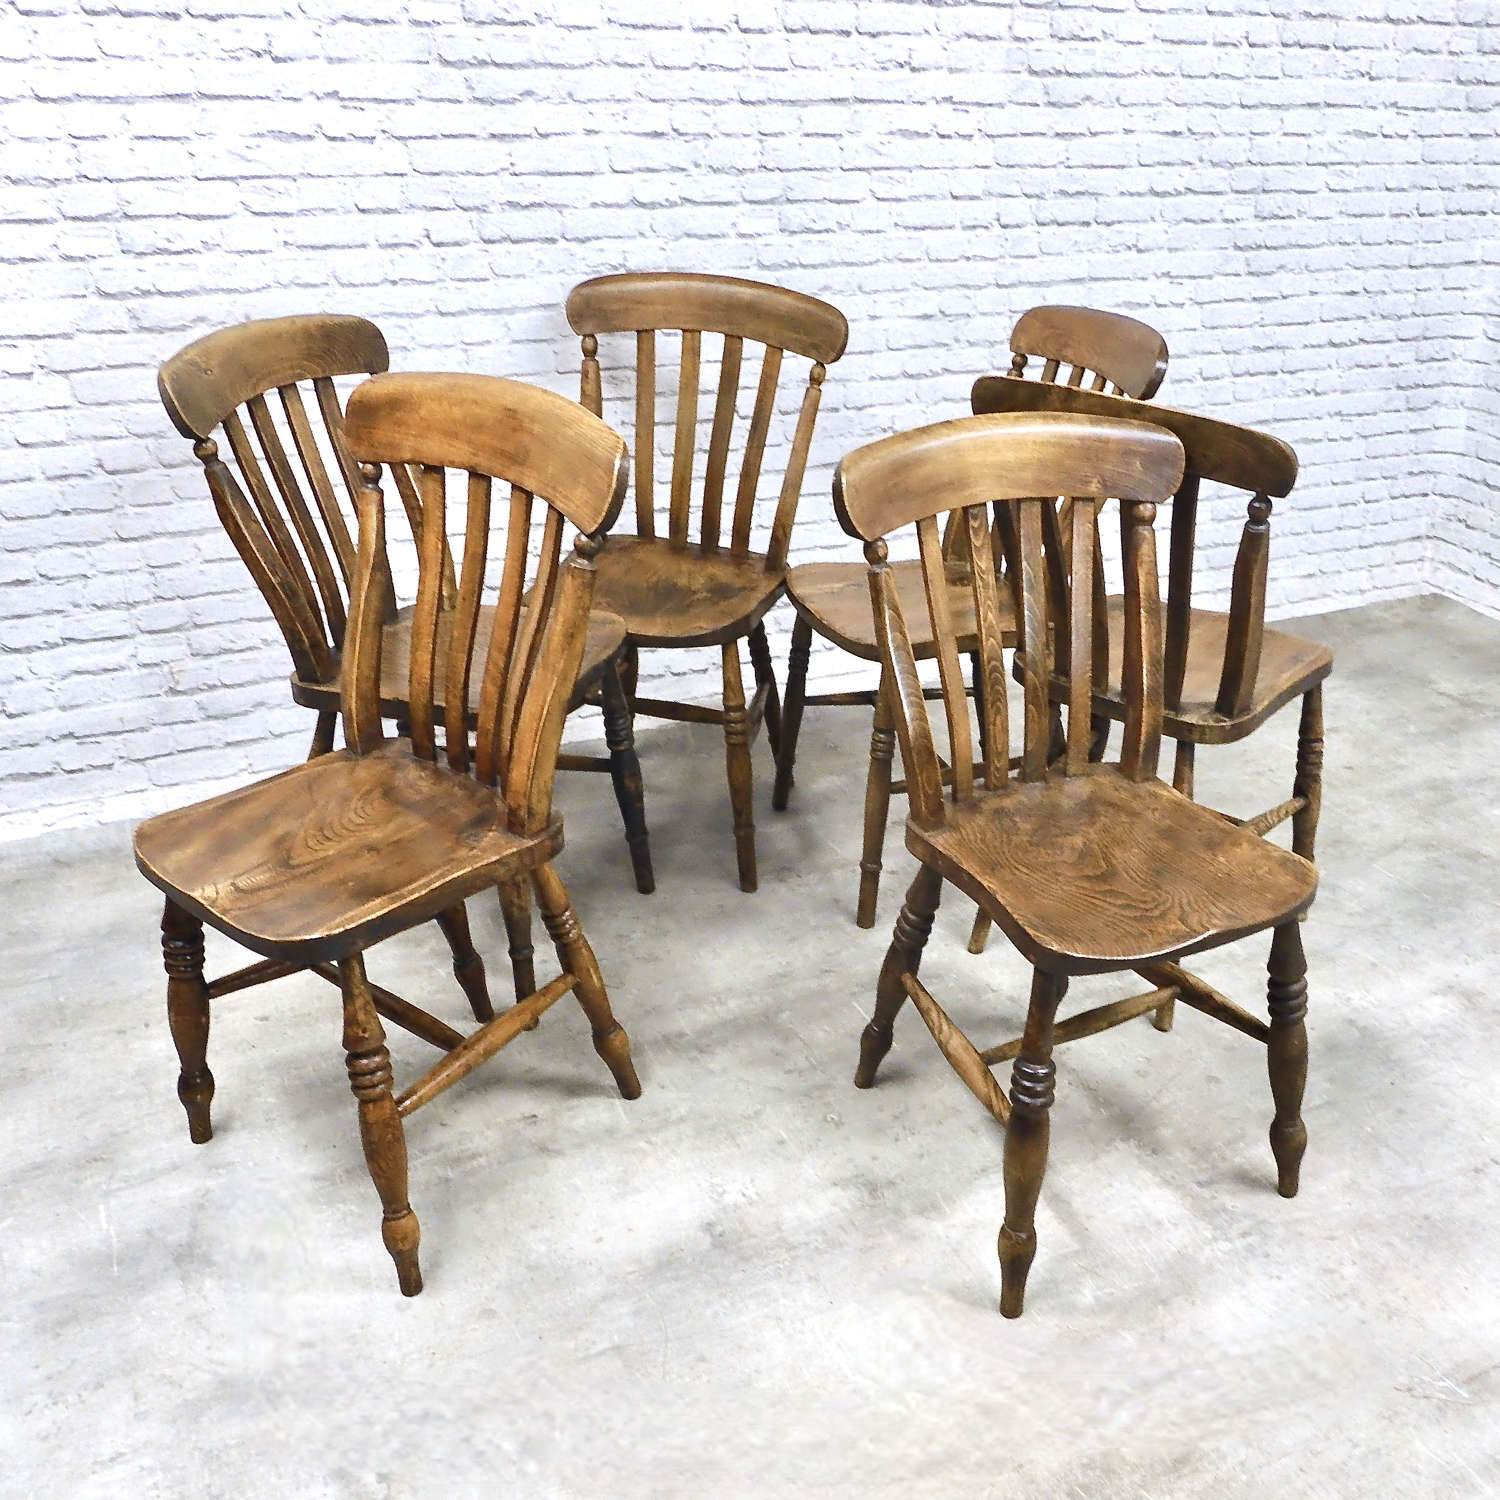 6x C19th Farmhouse Kitchen Chairs